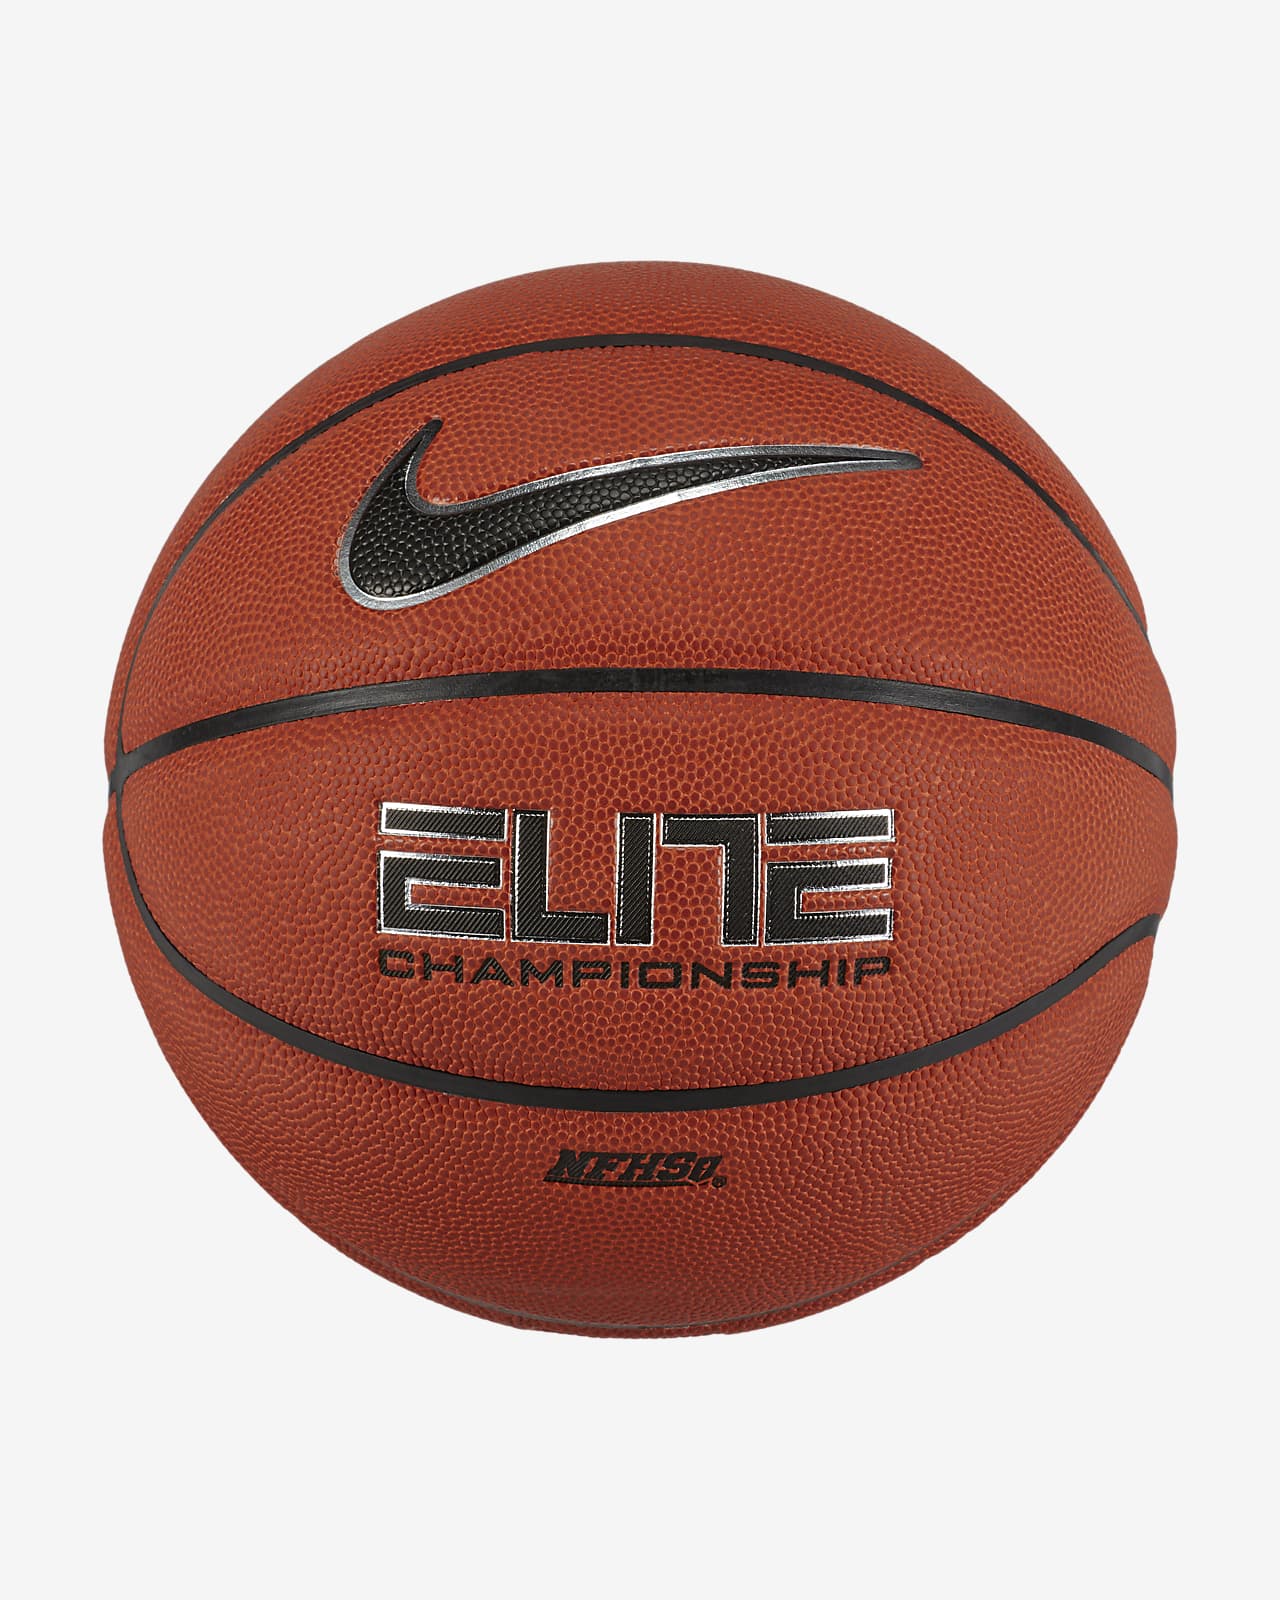 Pelota de básquetbol Nike Elite Championship para cancha cubierta. Nike.com